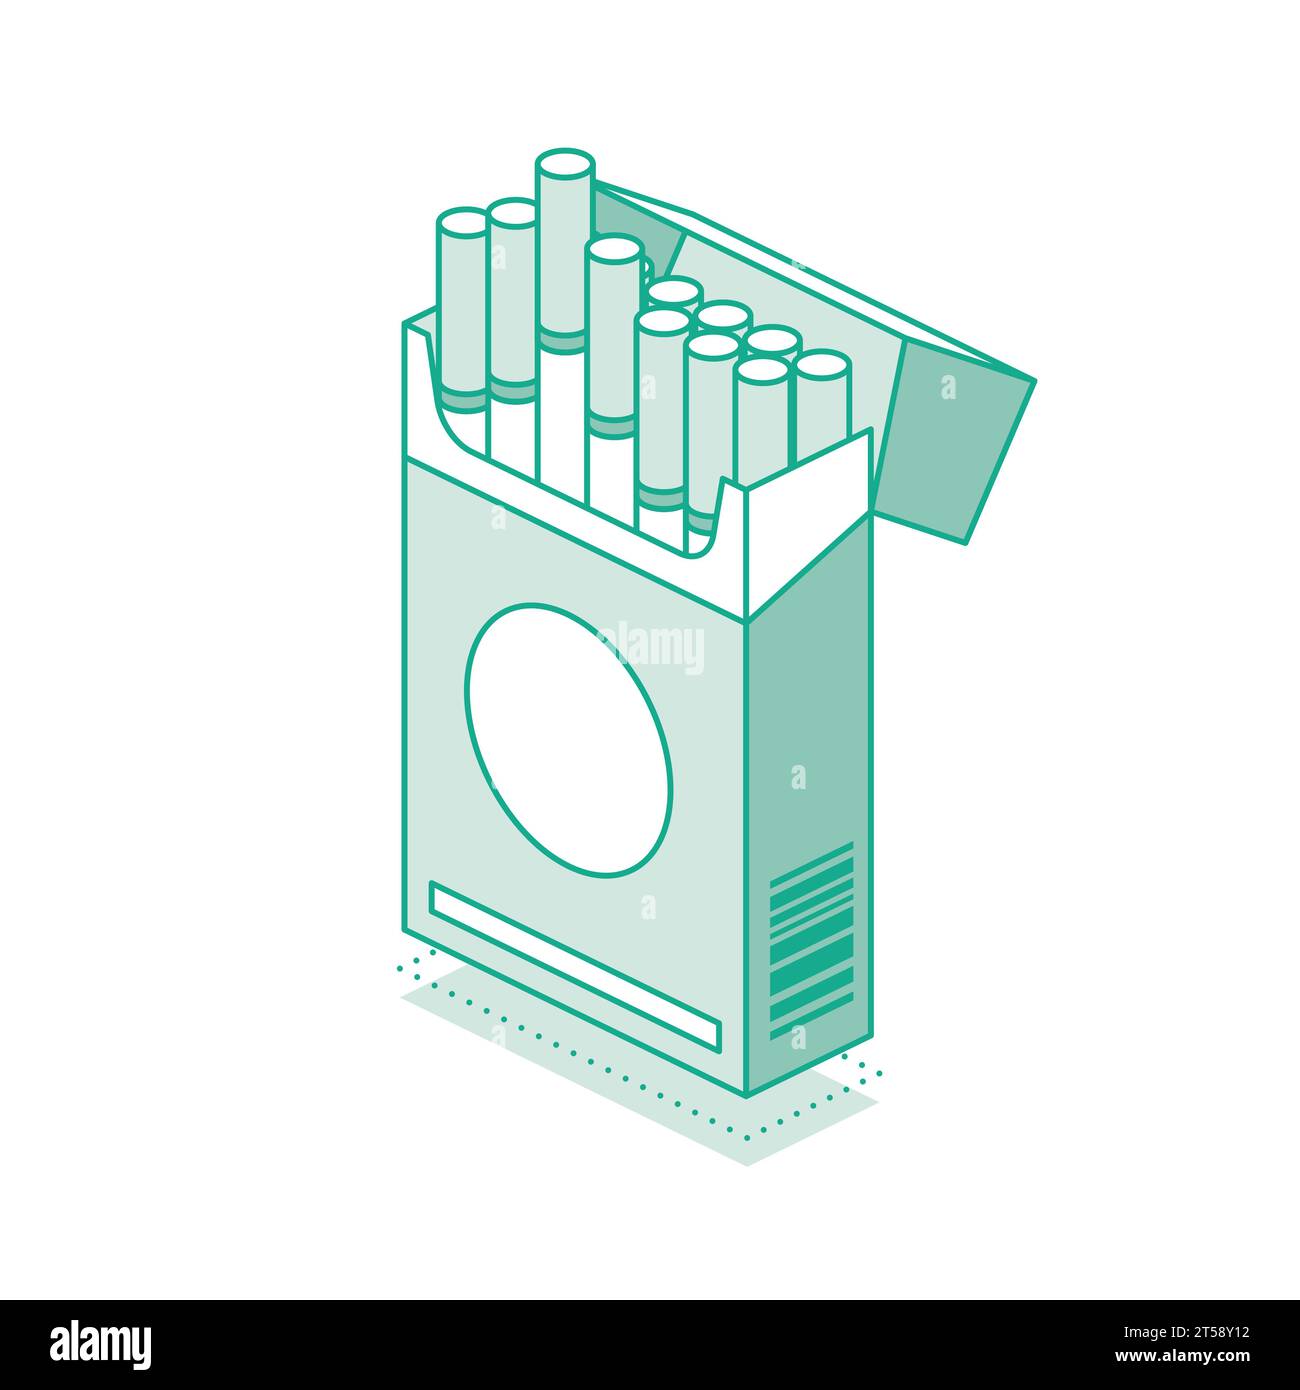 Paquet de cigarettes isométrique isolé sur fond blanc. Illustration vectorielle. Objet icône de contour. Symbole du tabagisme. Illustration de Vecteur